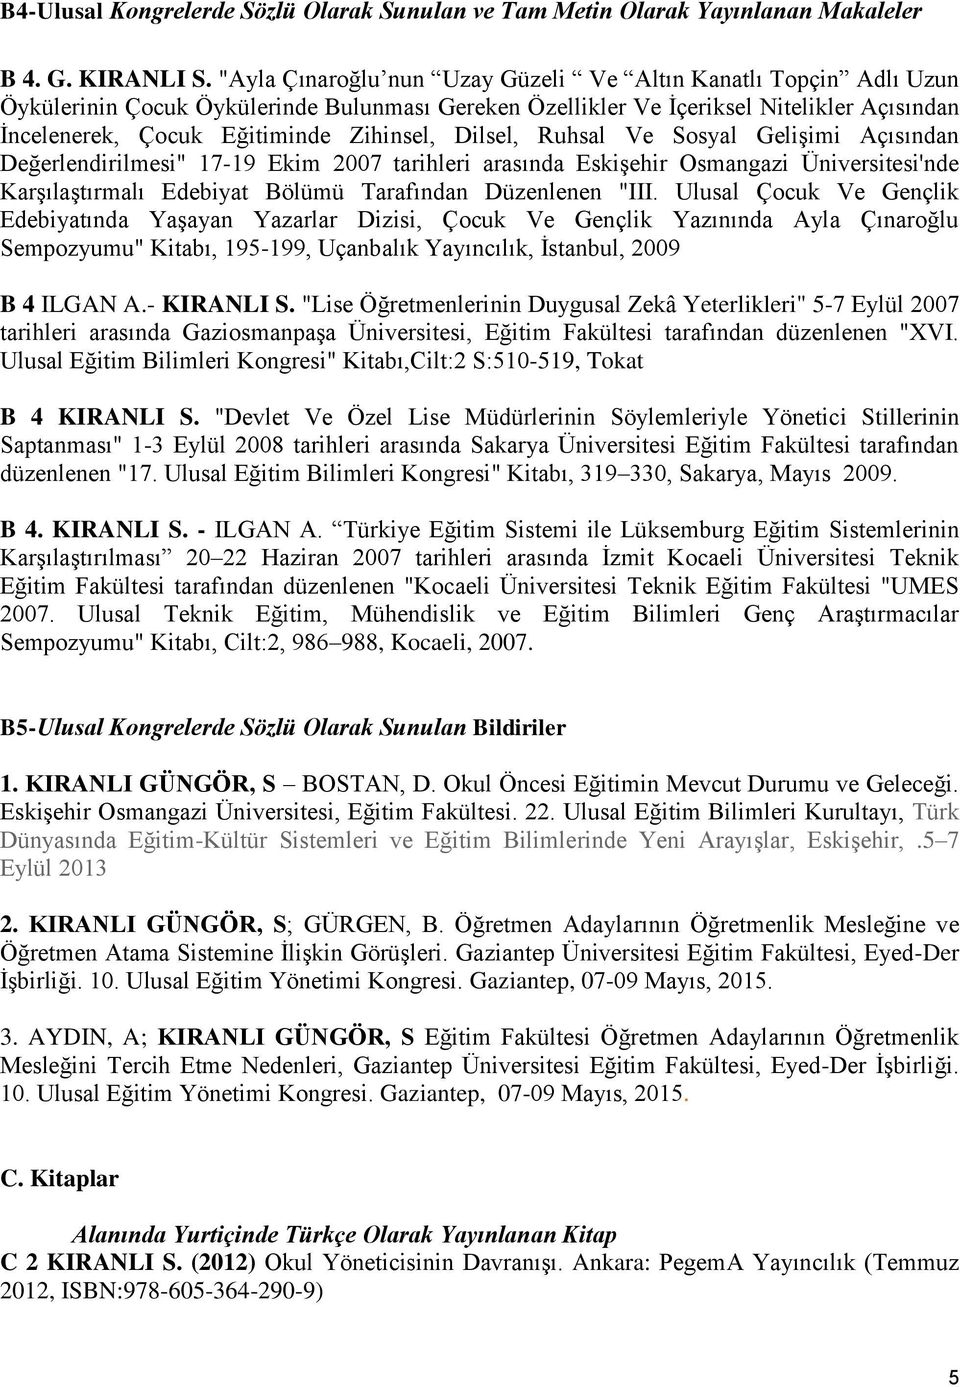 Dilsel, Ruhsal Ve Sosyal Gelişimi Açısından Değerlendirilmesi" 17-19 Ekim 2007 tarihleri arasında Eskişehir Osmangazi Üniversitesi'nde Karşılaştırmalı Edebiyat Bölümü Tarafından Düzenlenen "III.